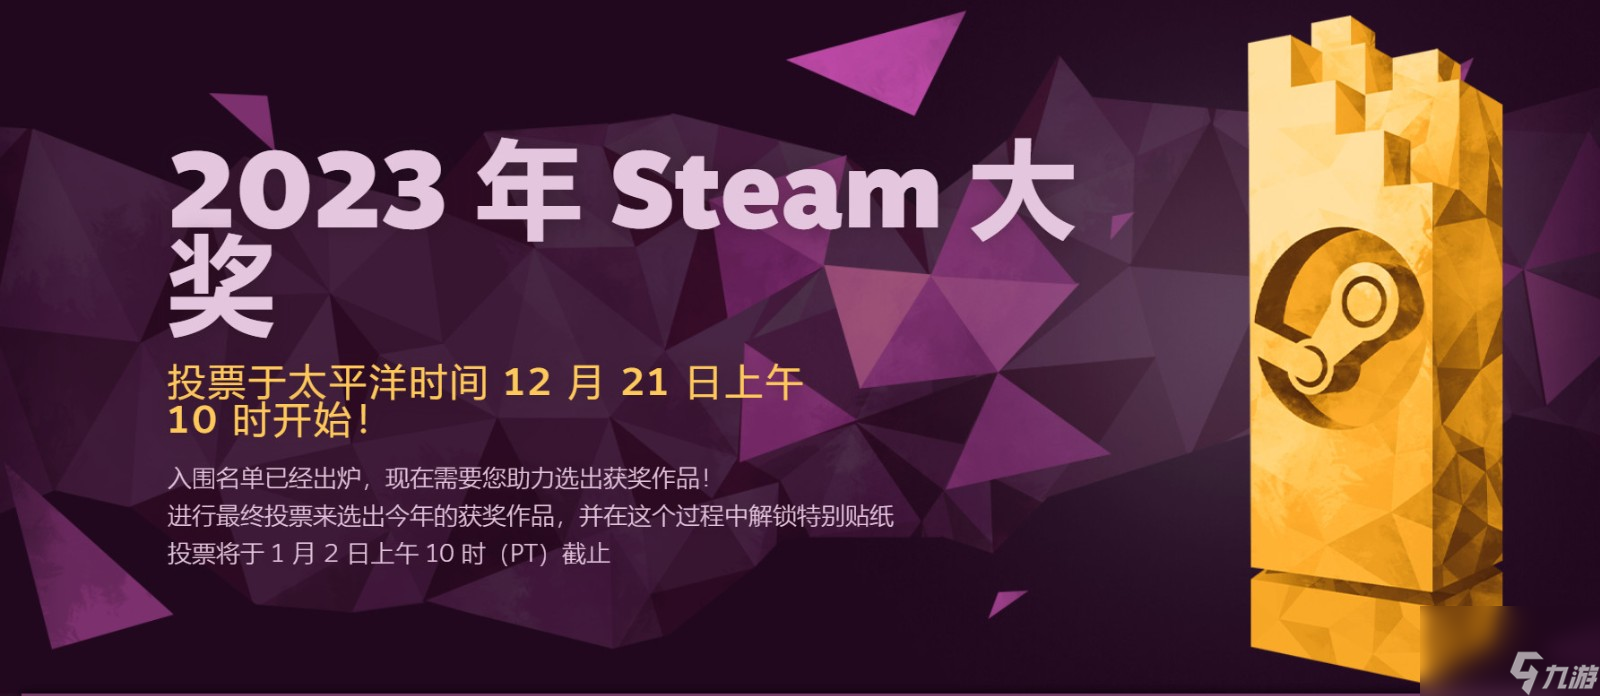 《星空》入围2023年Steam“最具创意游戏玩法”大奖提名